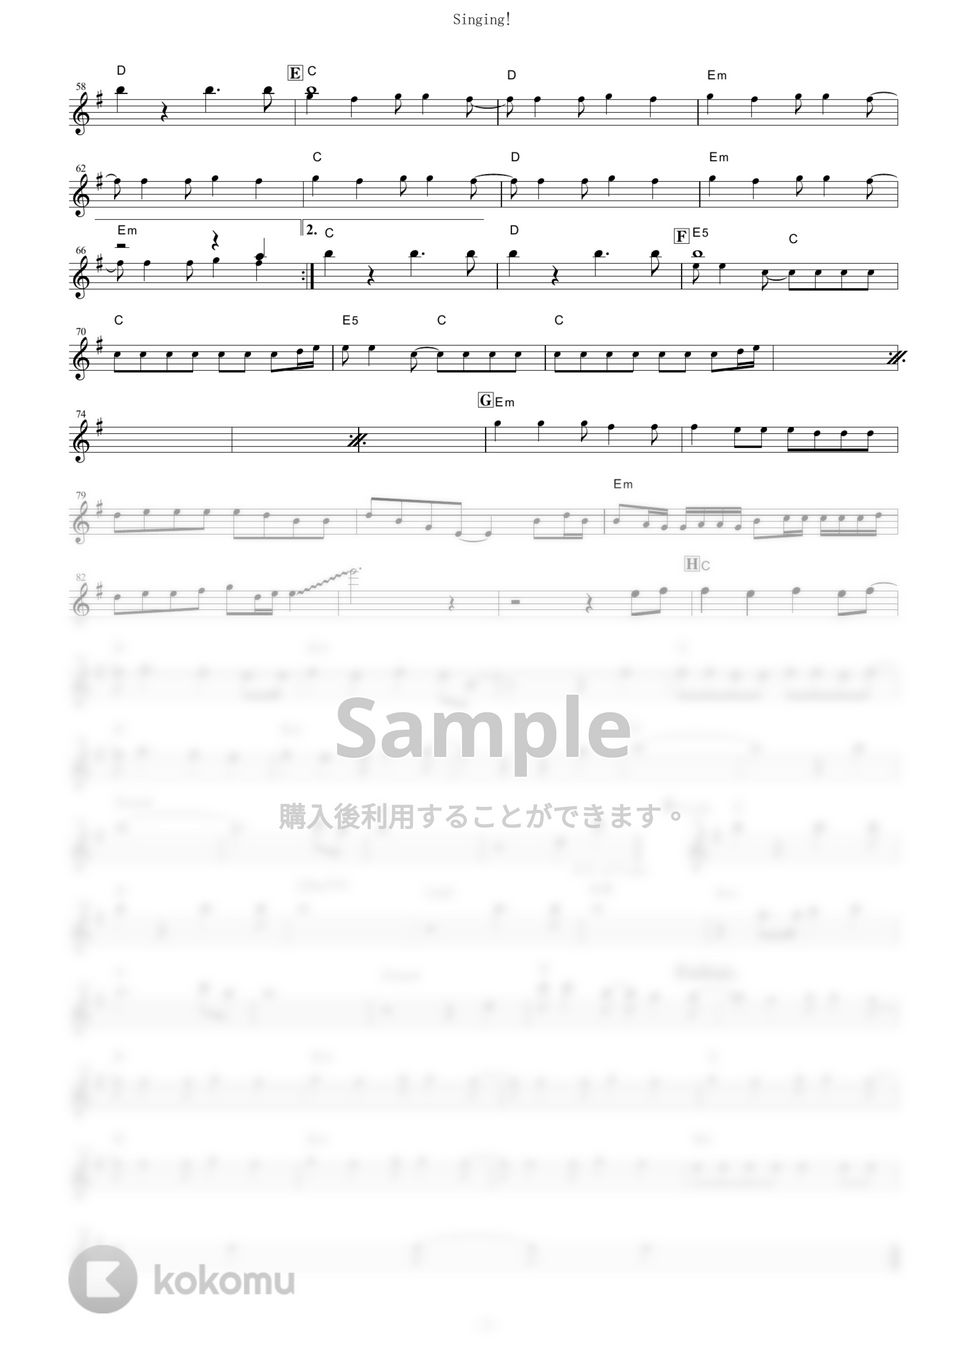 放課後ティータイム - Singing! (『映画けいおん！』 / in C) by muta-sax